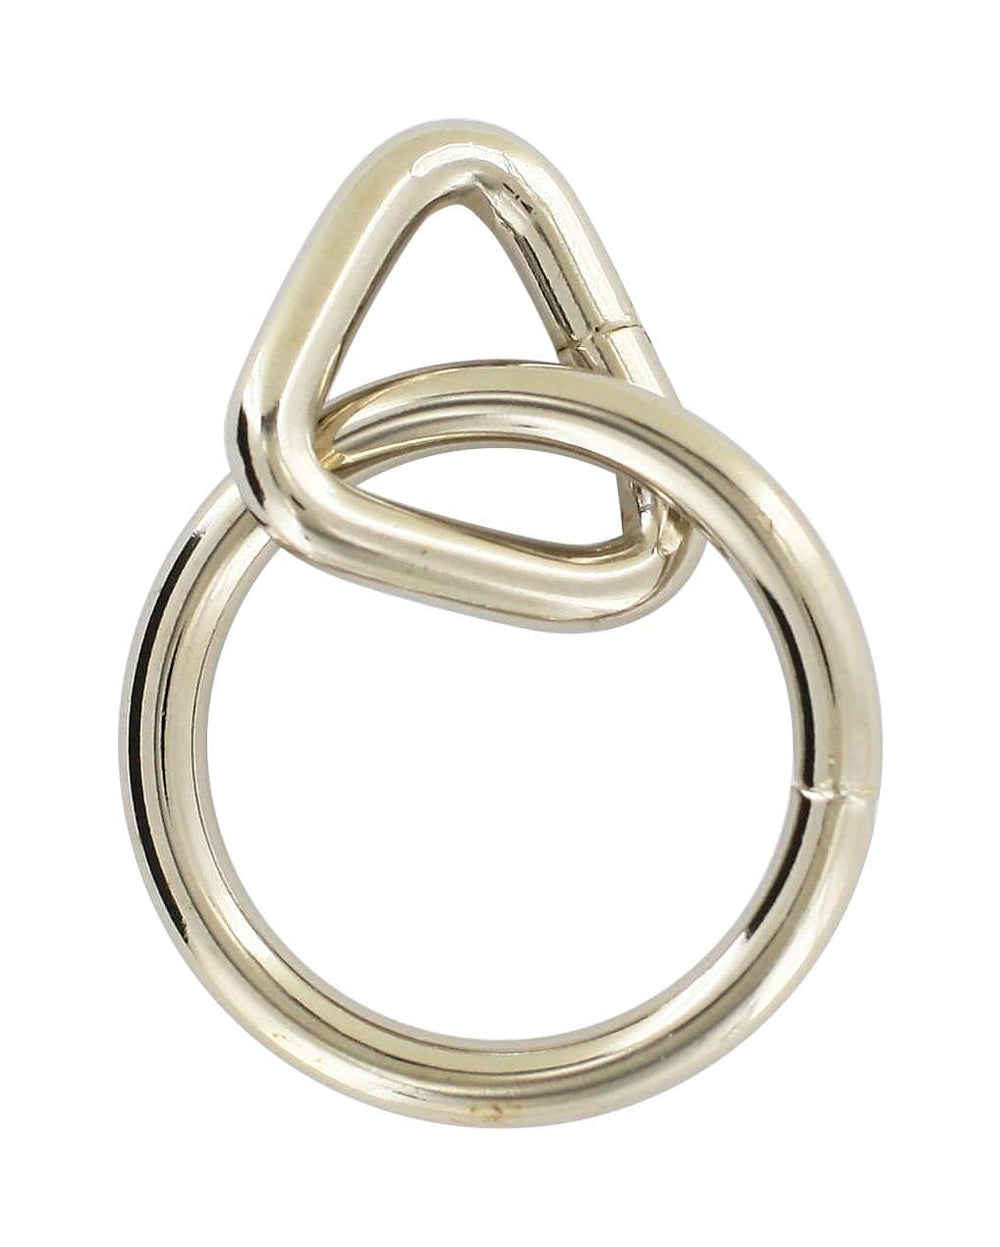 Ohio Travel Bag Rings & Slides 1 1/4" Nickel, Loop & Ring, Steel, #L-2376 L-2376